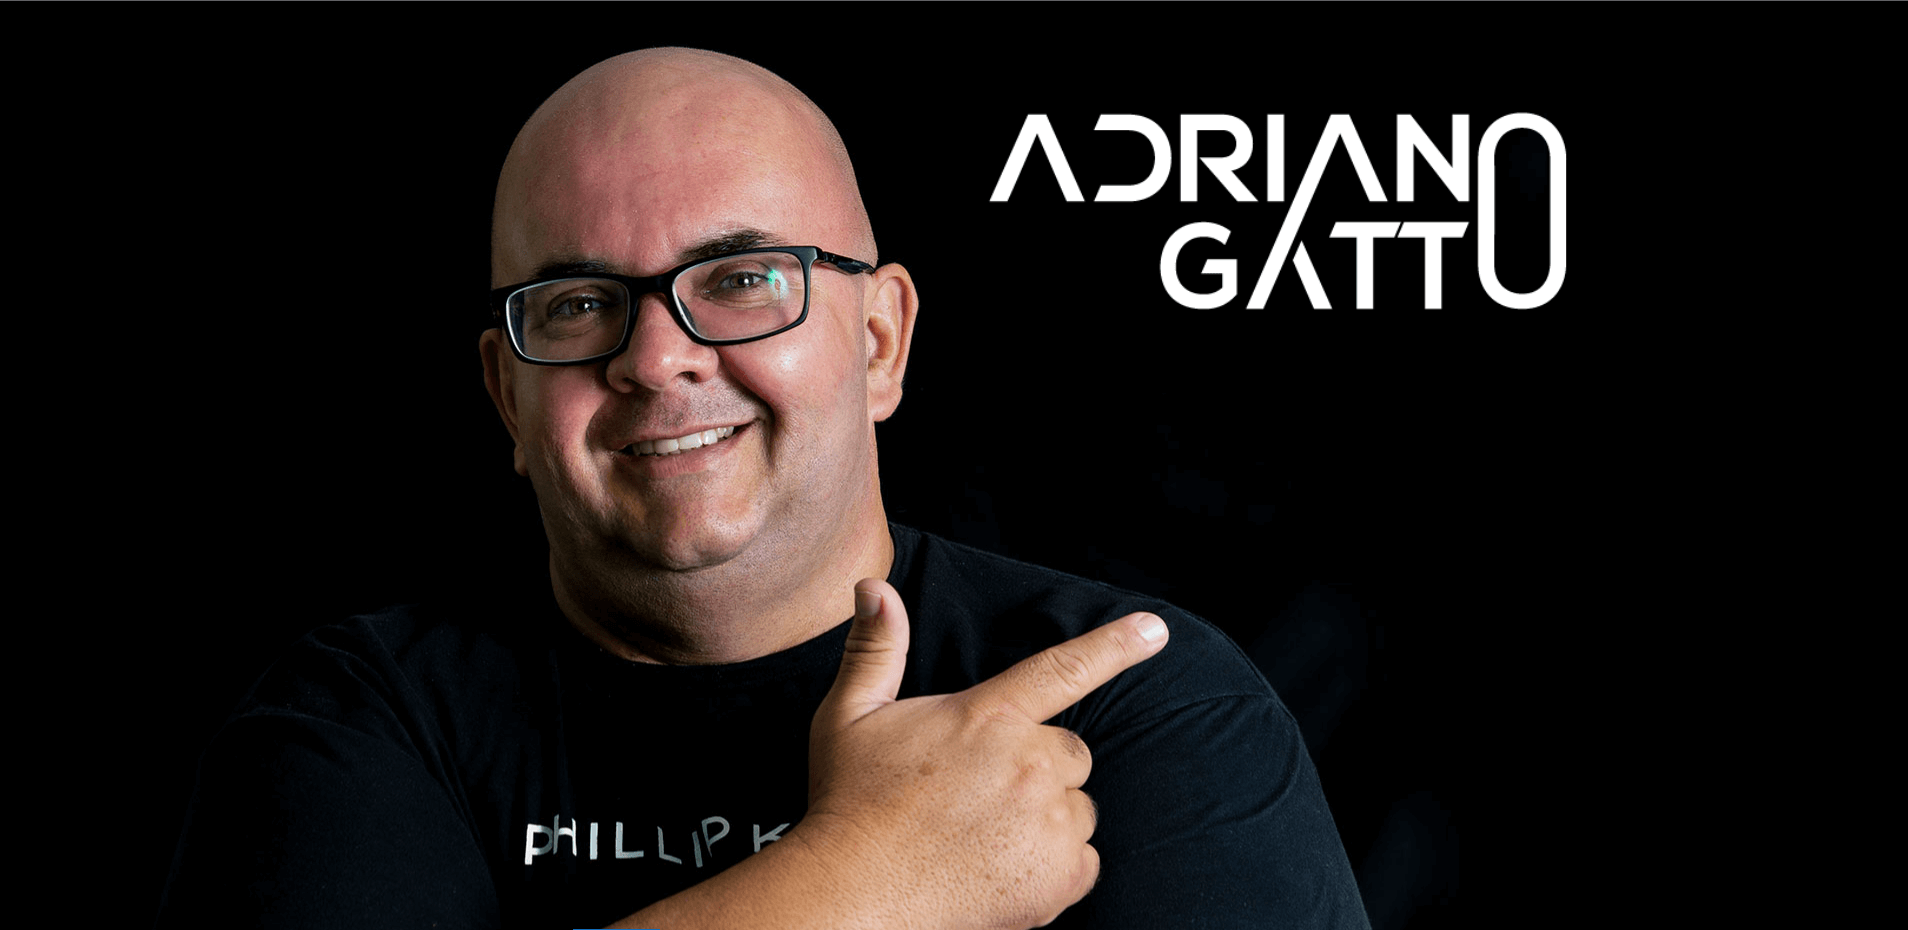 Adriano Gatto